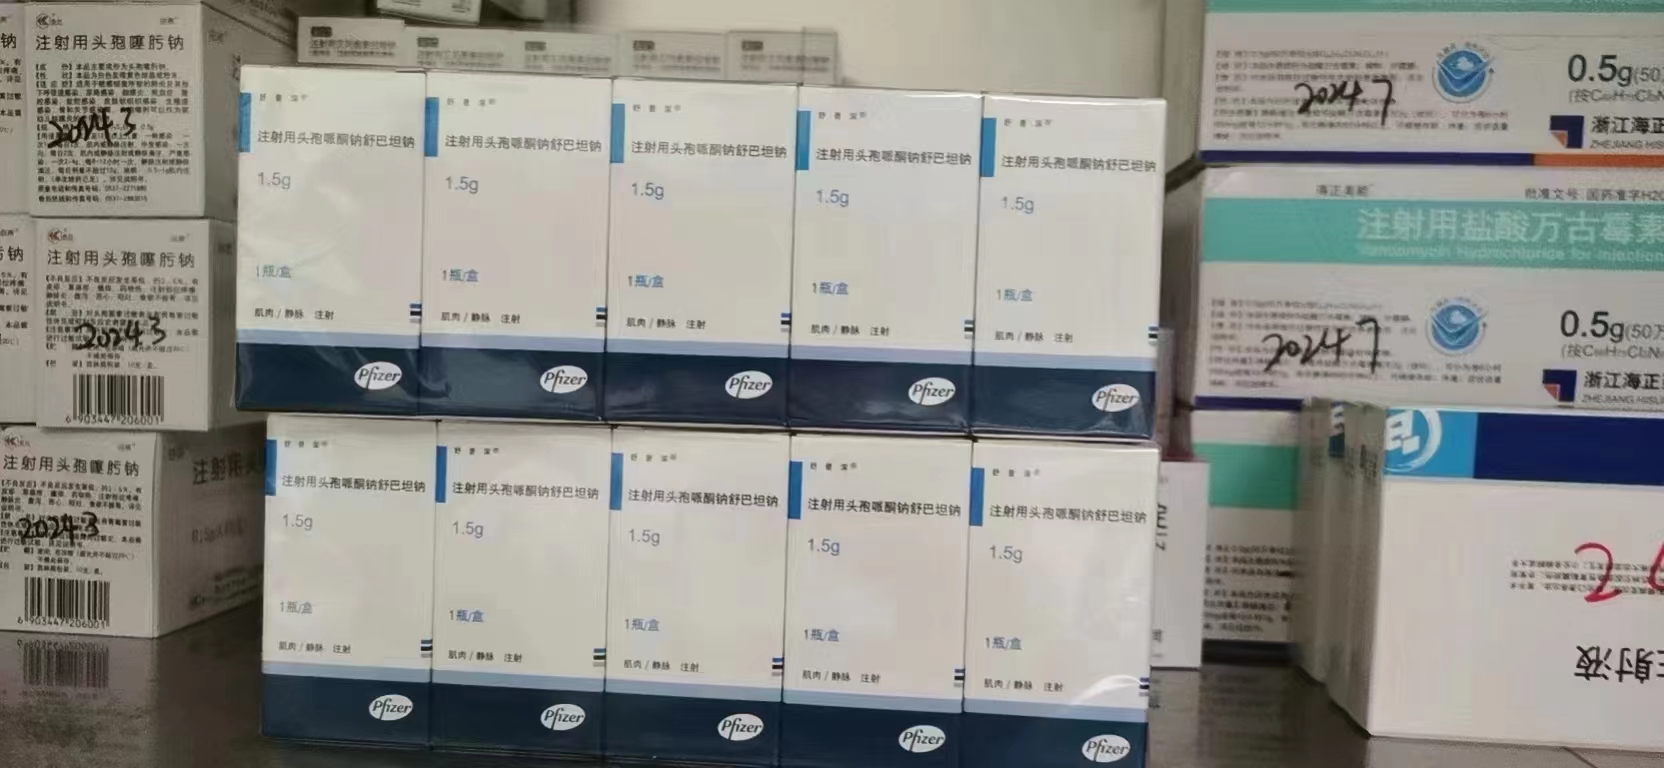 襄樊回收肿瘤药，长期在线收购